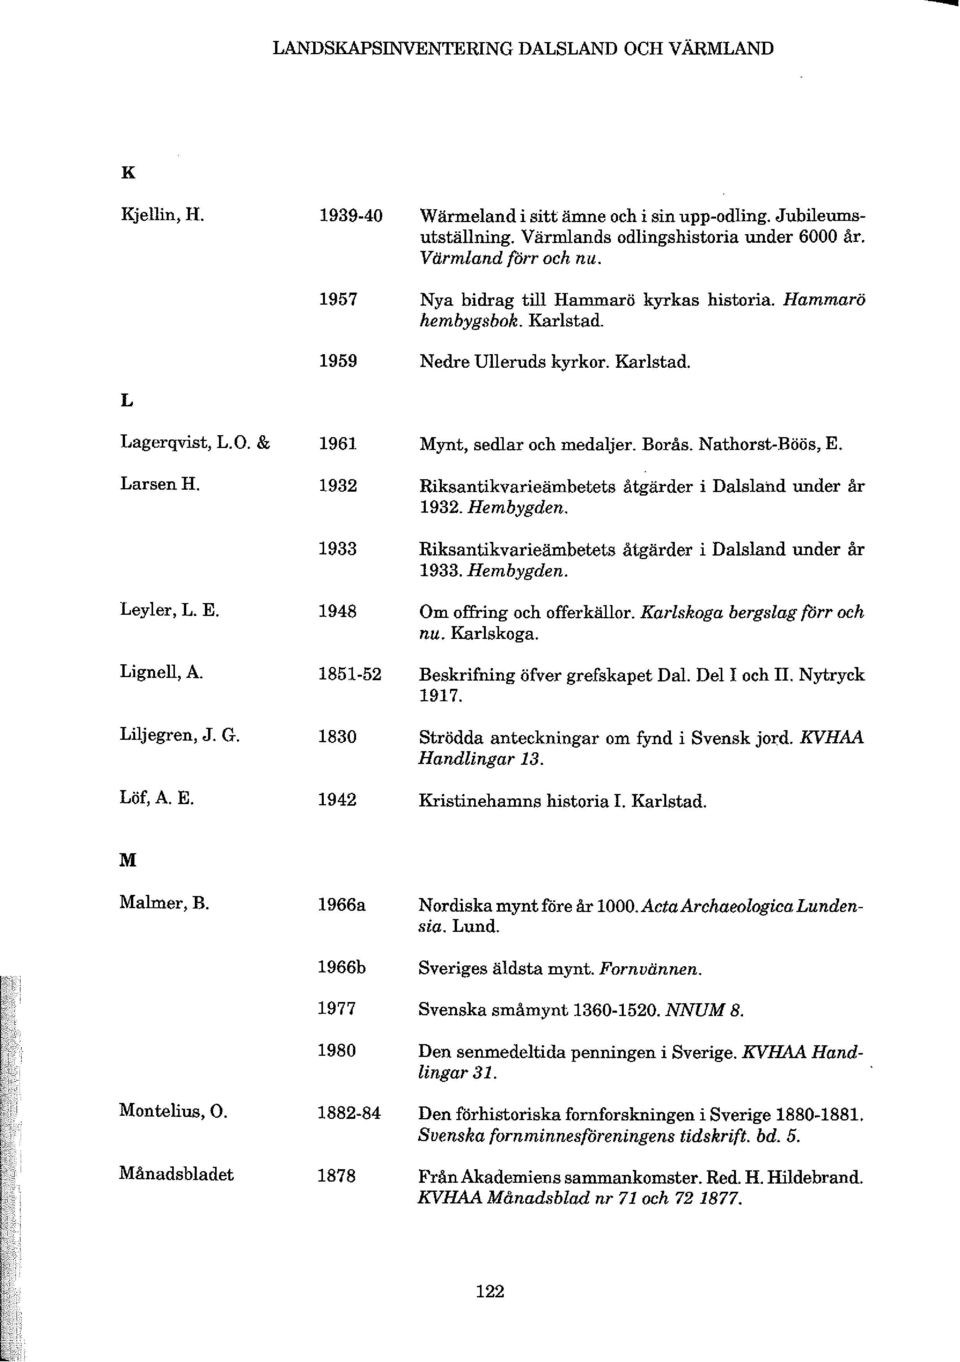 Riksantikvarieämbetets åtgärder i Dalsland under år 1932. Hembygden. 1933 Riksantikvarieämbetets åtgärder i Dalsland under år 1933. Hembygden. Leyler, L. E.